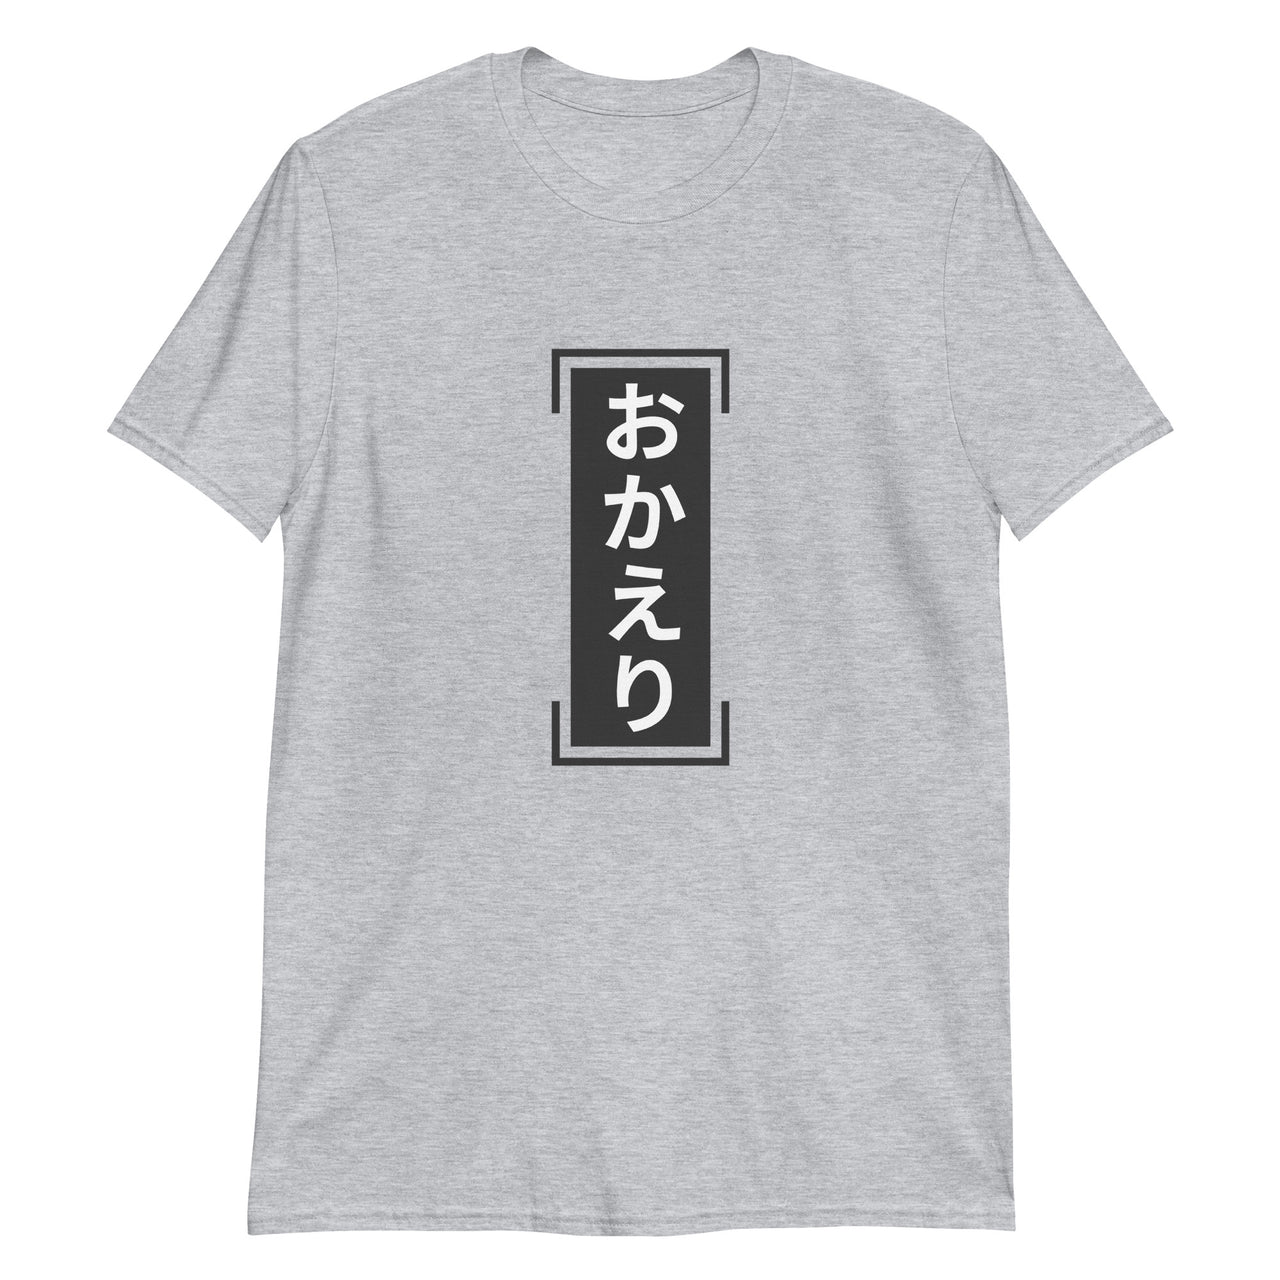 Japanese "Okaeri" Welcome Back Unisex Japanese-Themed Shirt